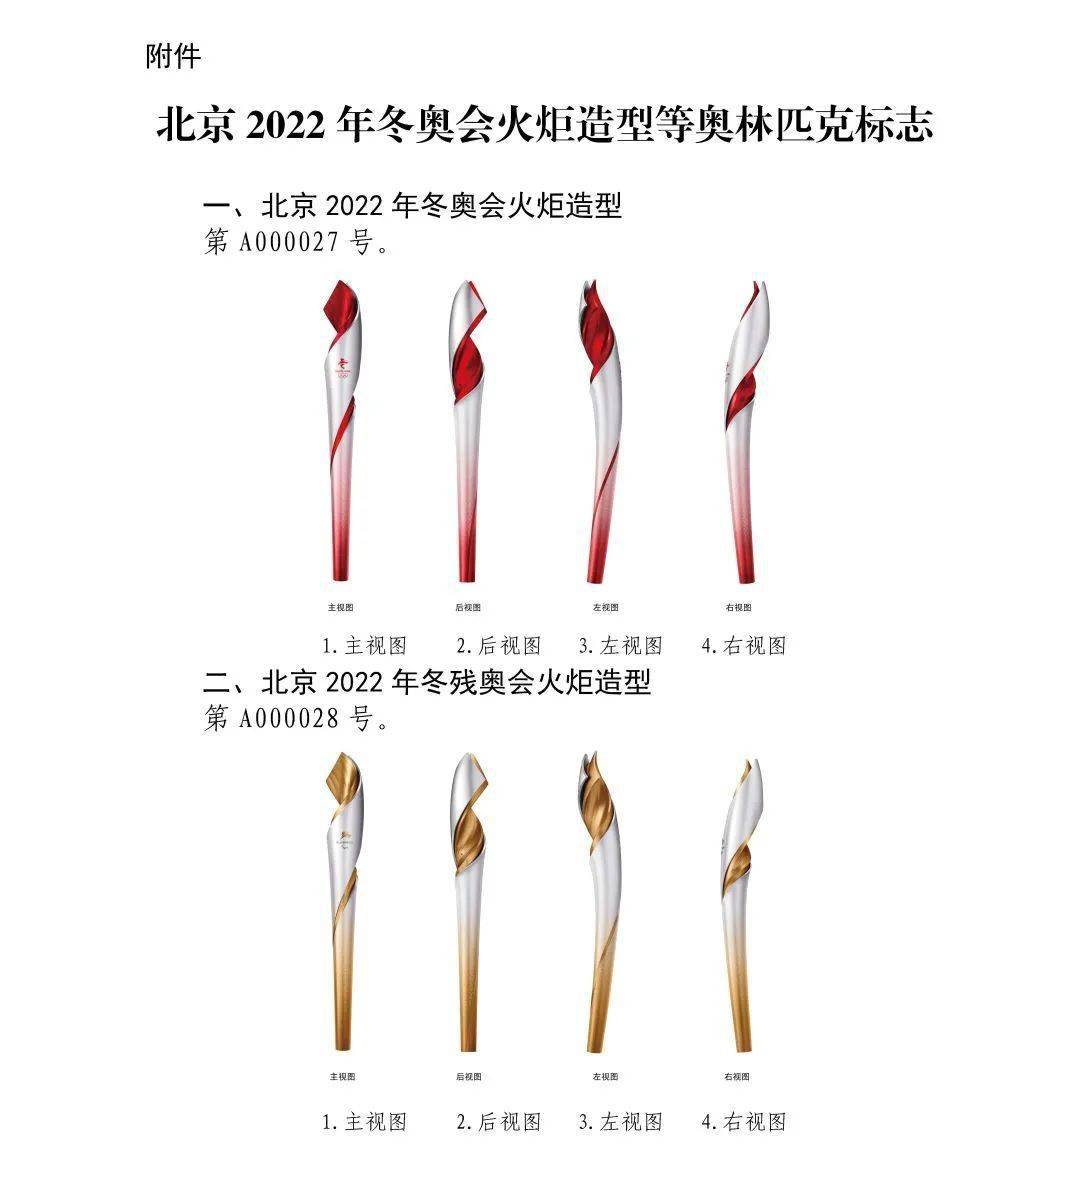 关于"北京2022年冬奥会火炬造型"等标志实施保护的公告_组织委员会